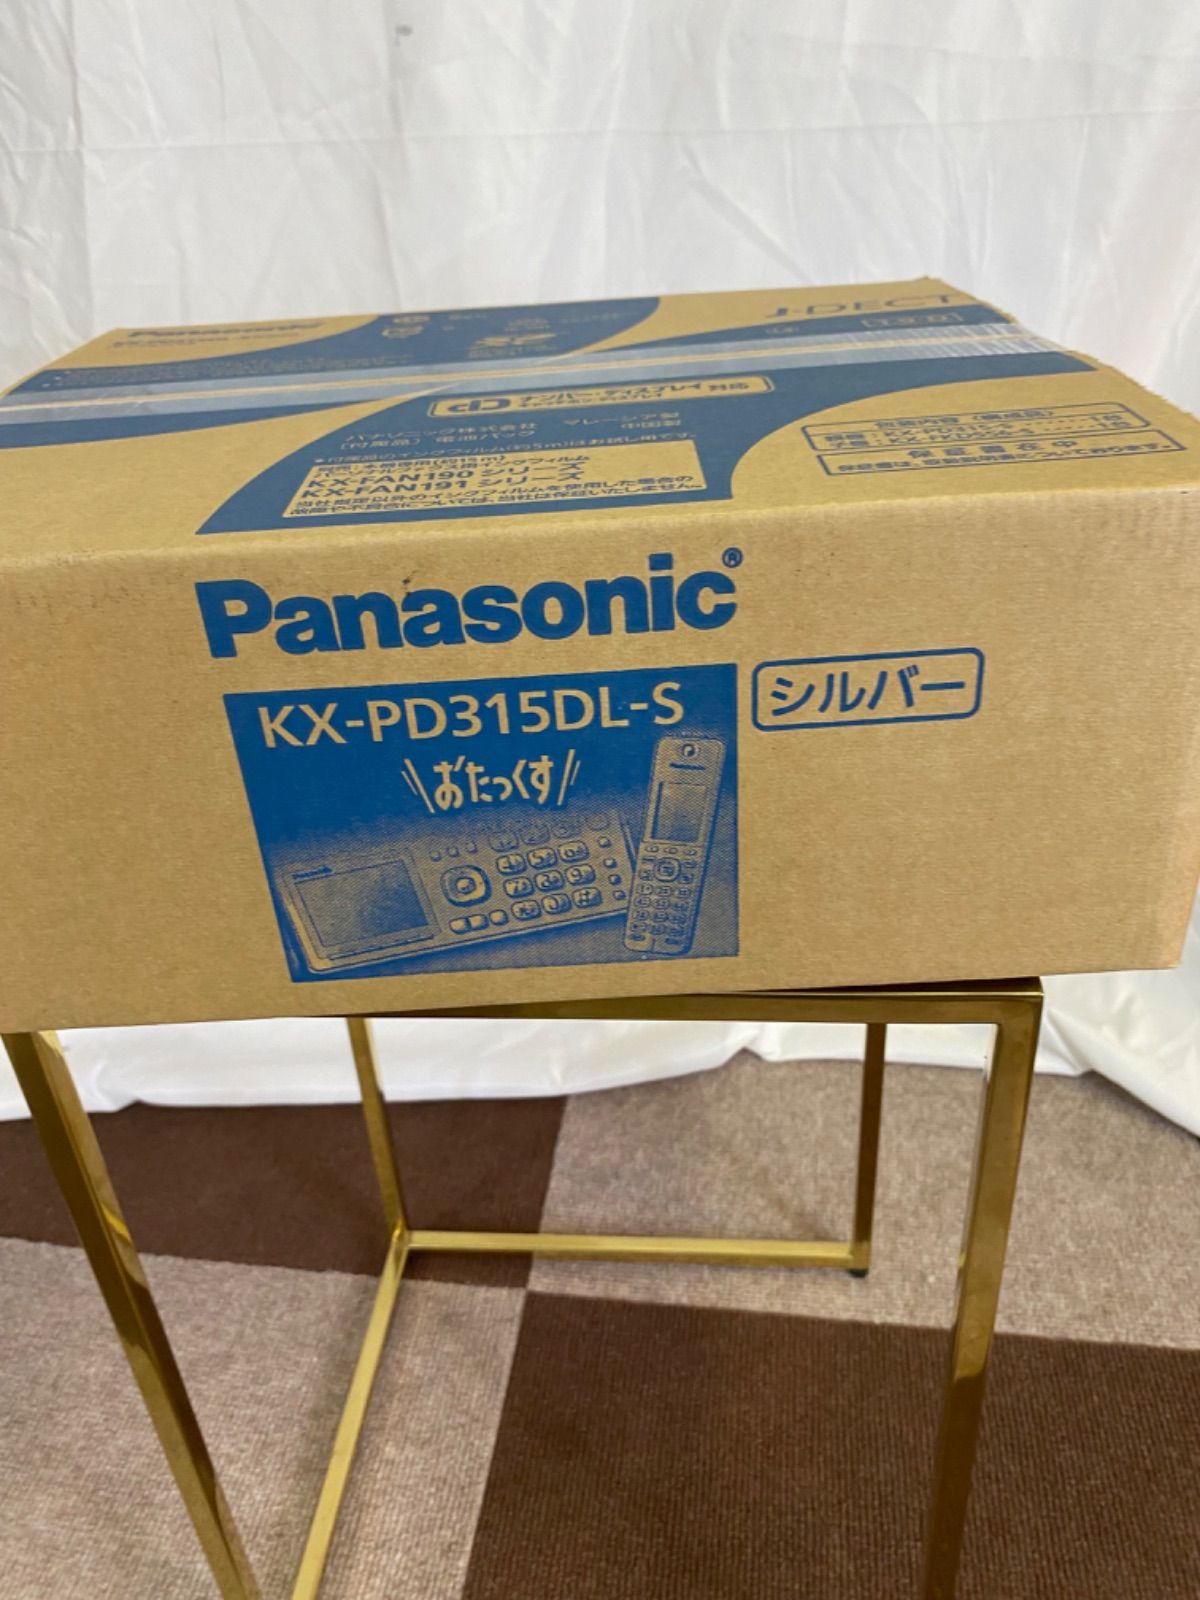 新品未使用品】Panasonic KX-PD315DL-S - DHDA MARKET SHOP - メルカリ